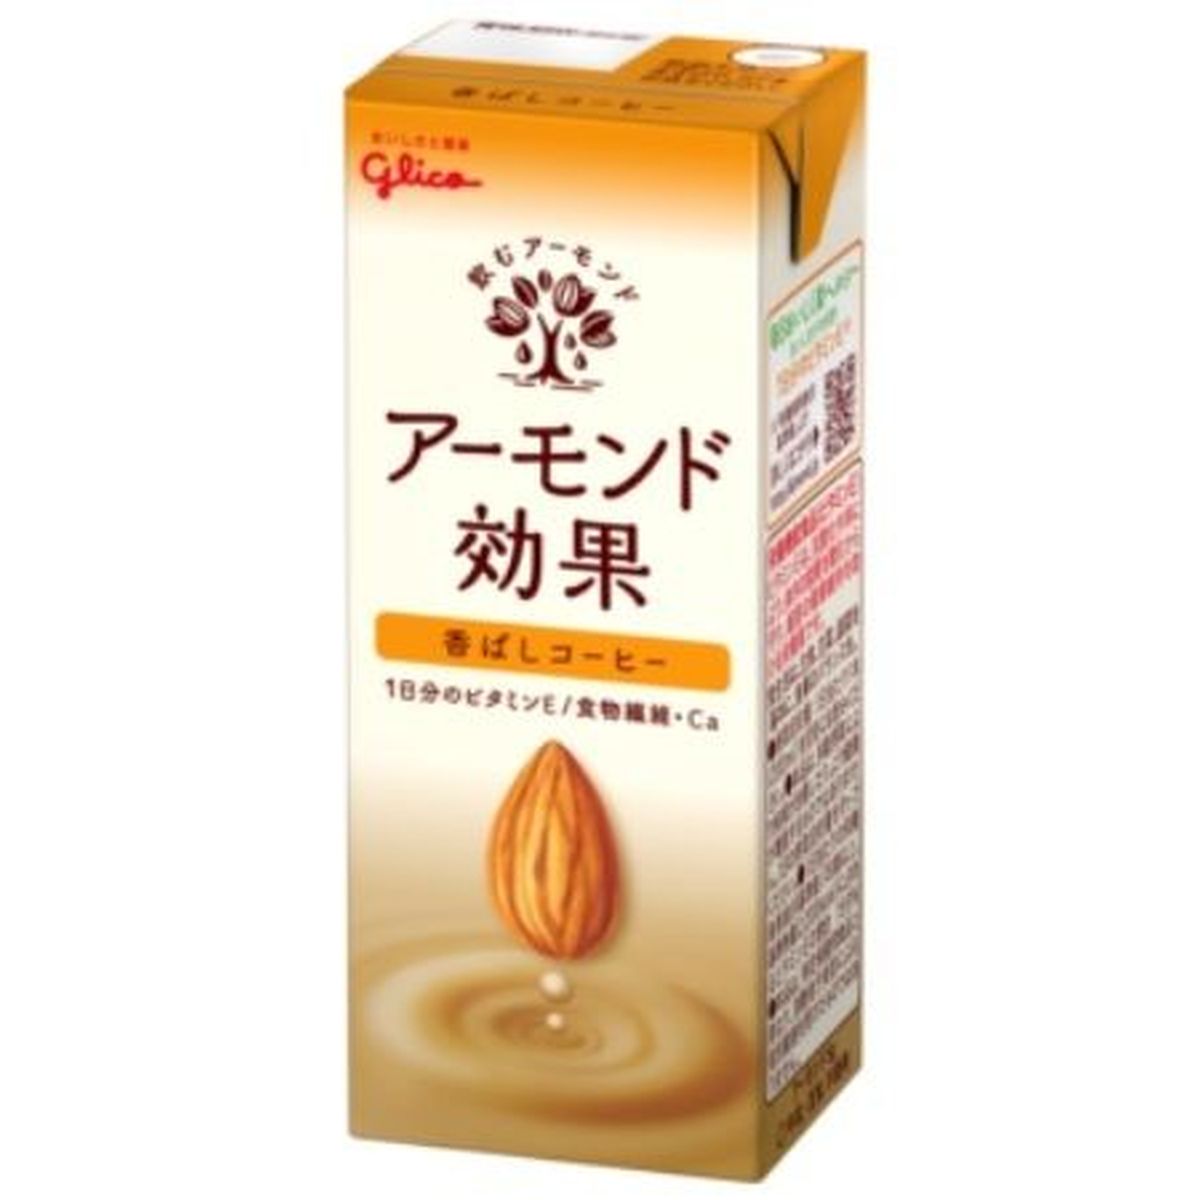 【12個入リ】グリコ アーモンド効果香バシコーヒーD紙 200ml